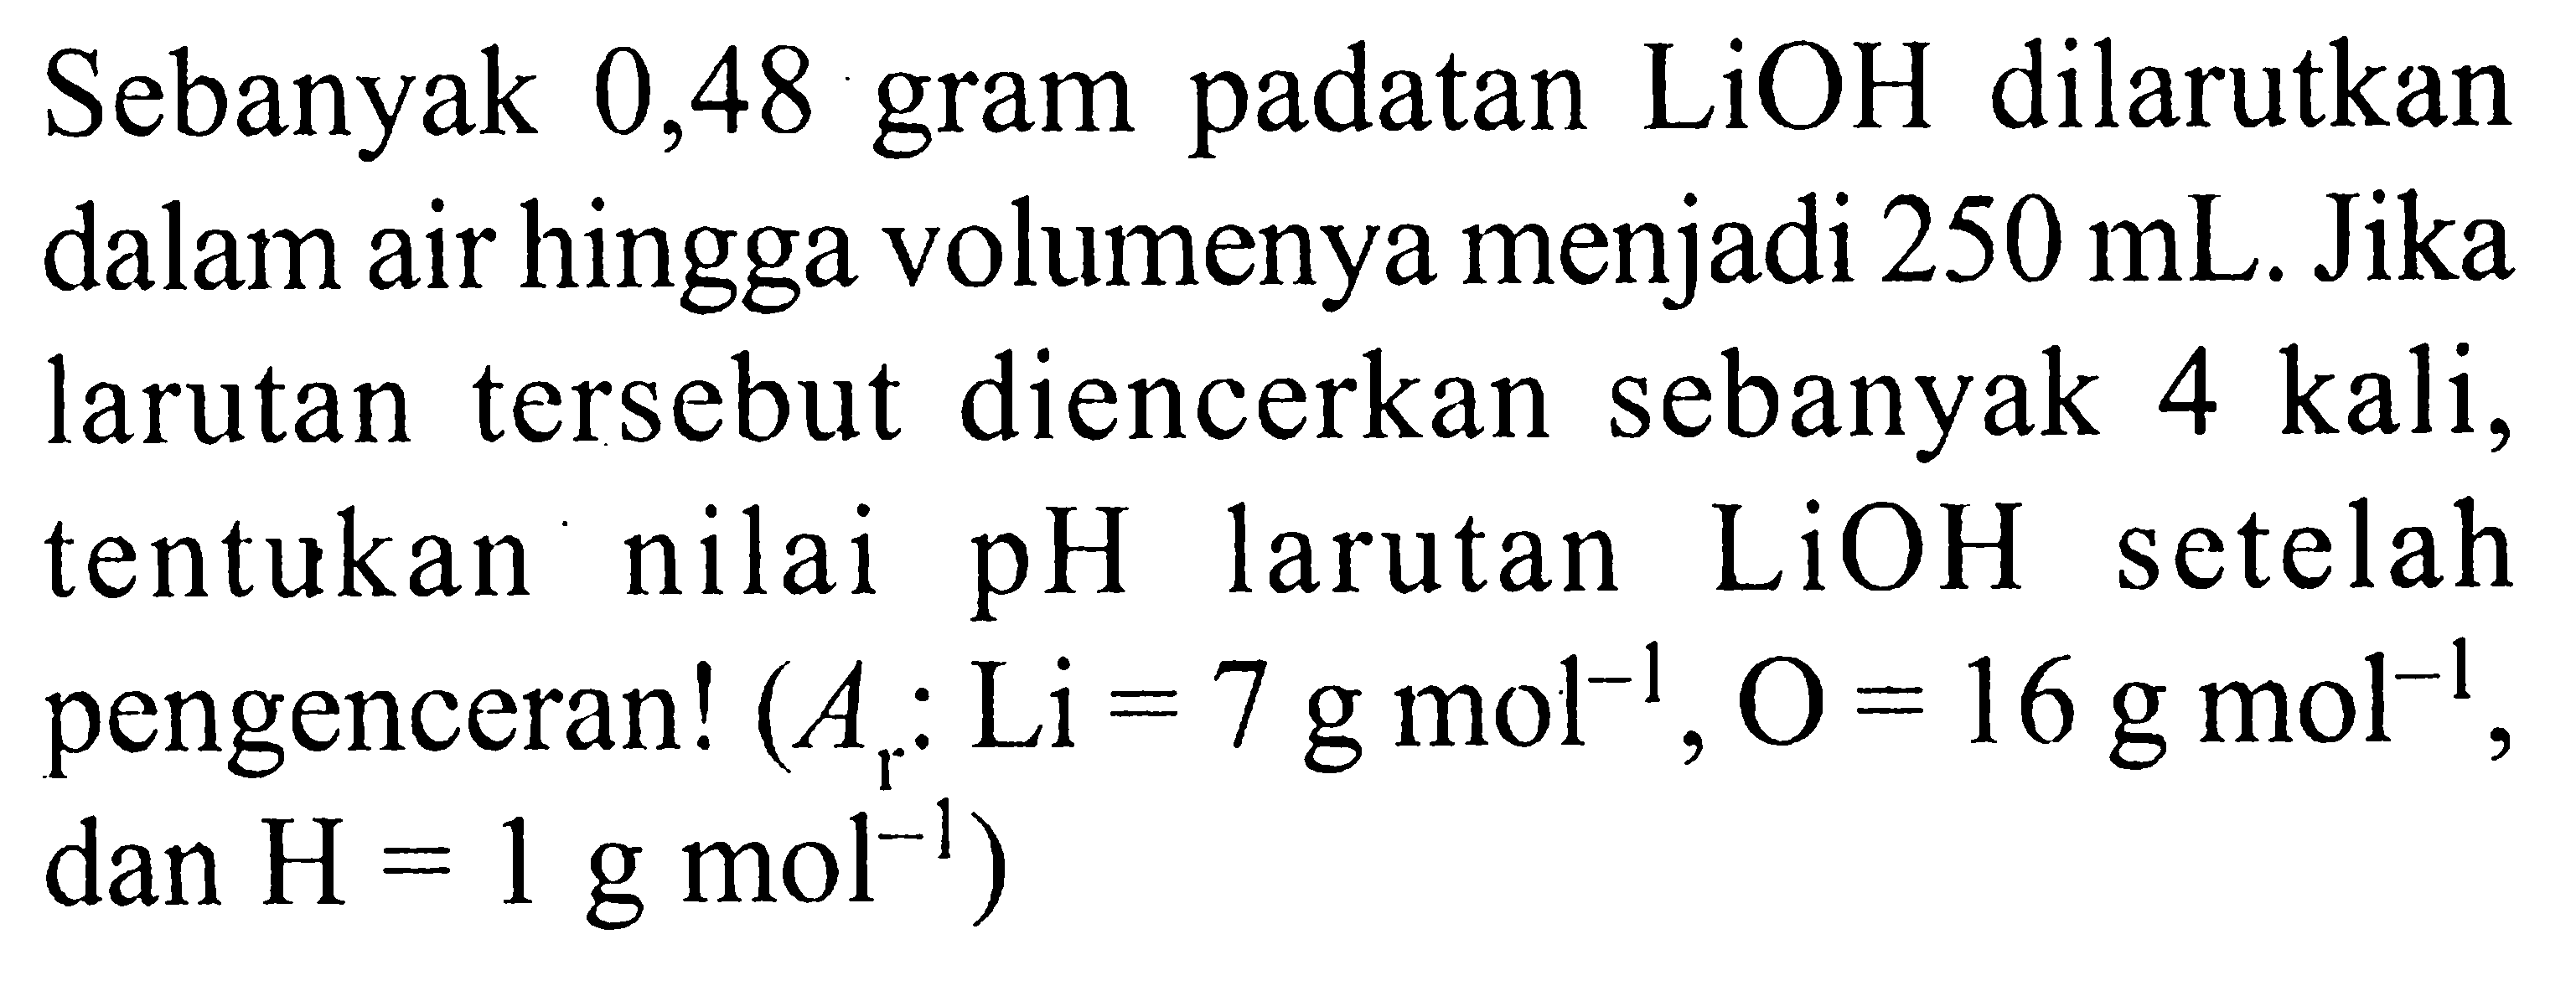 Sebanyak 0,48 gram padatan  LiOH  dilarutkan dalam air hingga volumenya menjadi  250 mL . Jika larutan tersebut diencerkan sebanyak 4 kali, tentukan nilai  pH  larutan  LiOH  setelah pengenceran!  (Ar: Li=7 g mol^-1, O=16 g mol^-1. , dan  H=1 g mol^-1  )